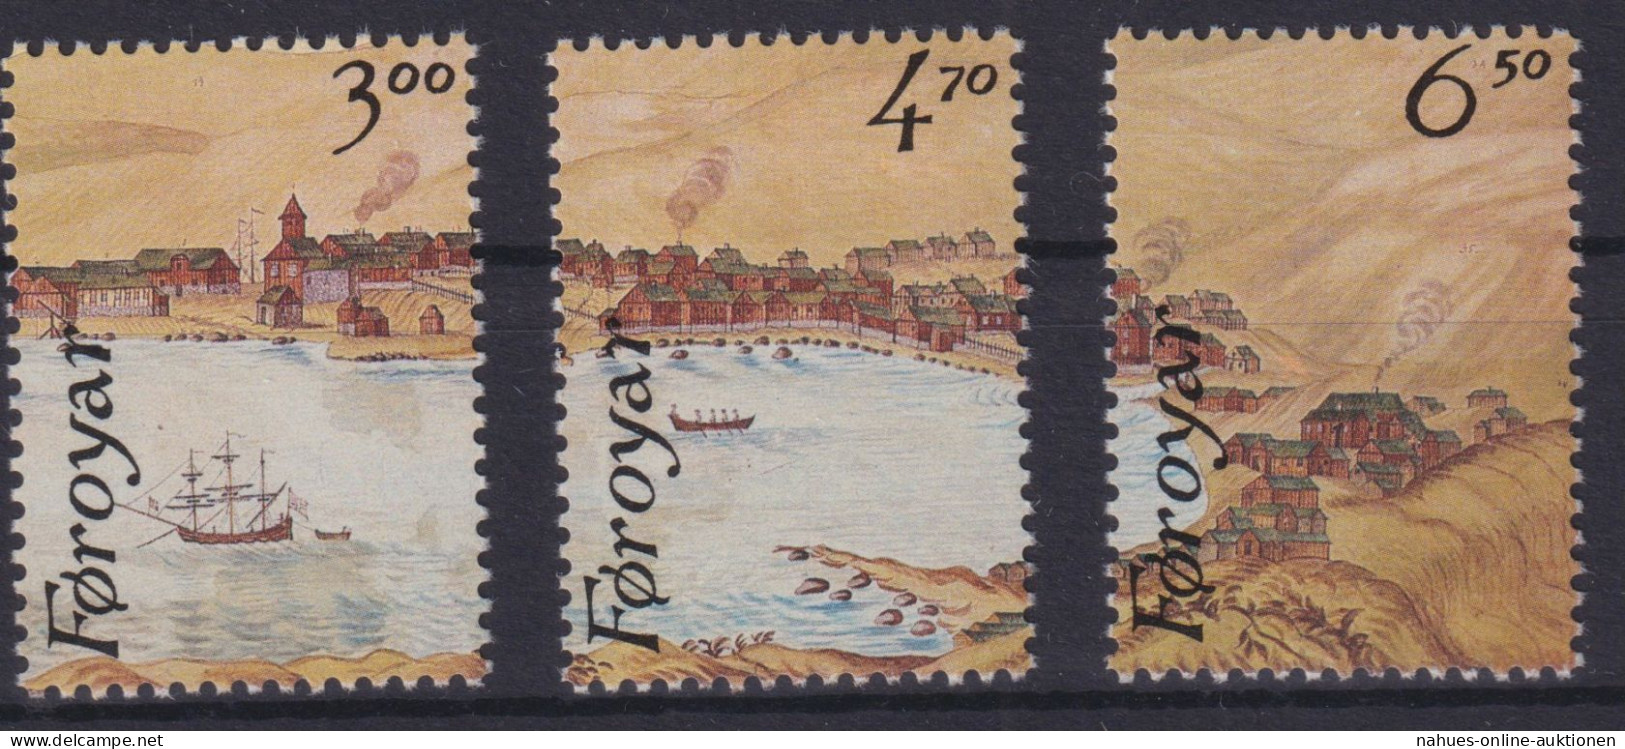 Briefmarken Dänemark Färöer 139-141 Einzelmarken Block 2 Philatelie Luxus 9,00 - Féroé (Iles)